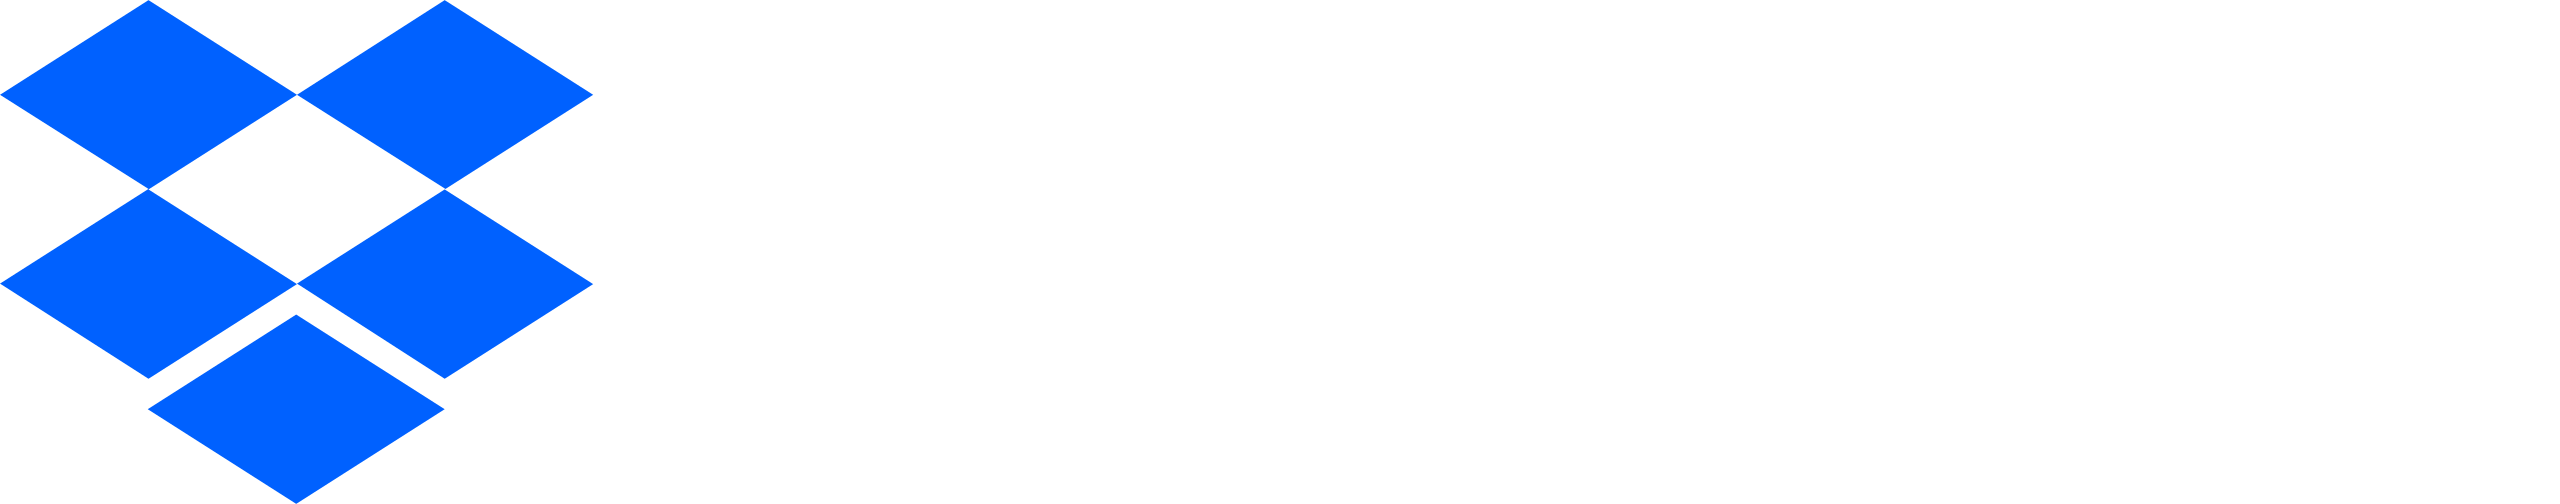 Dropbox 로고